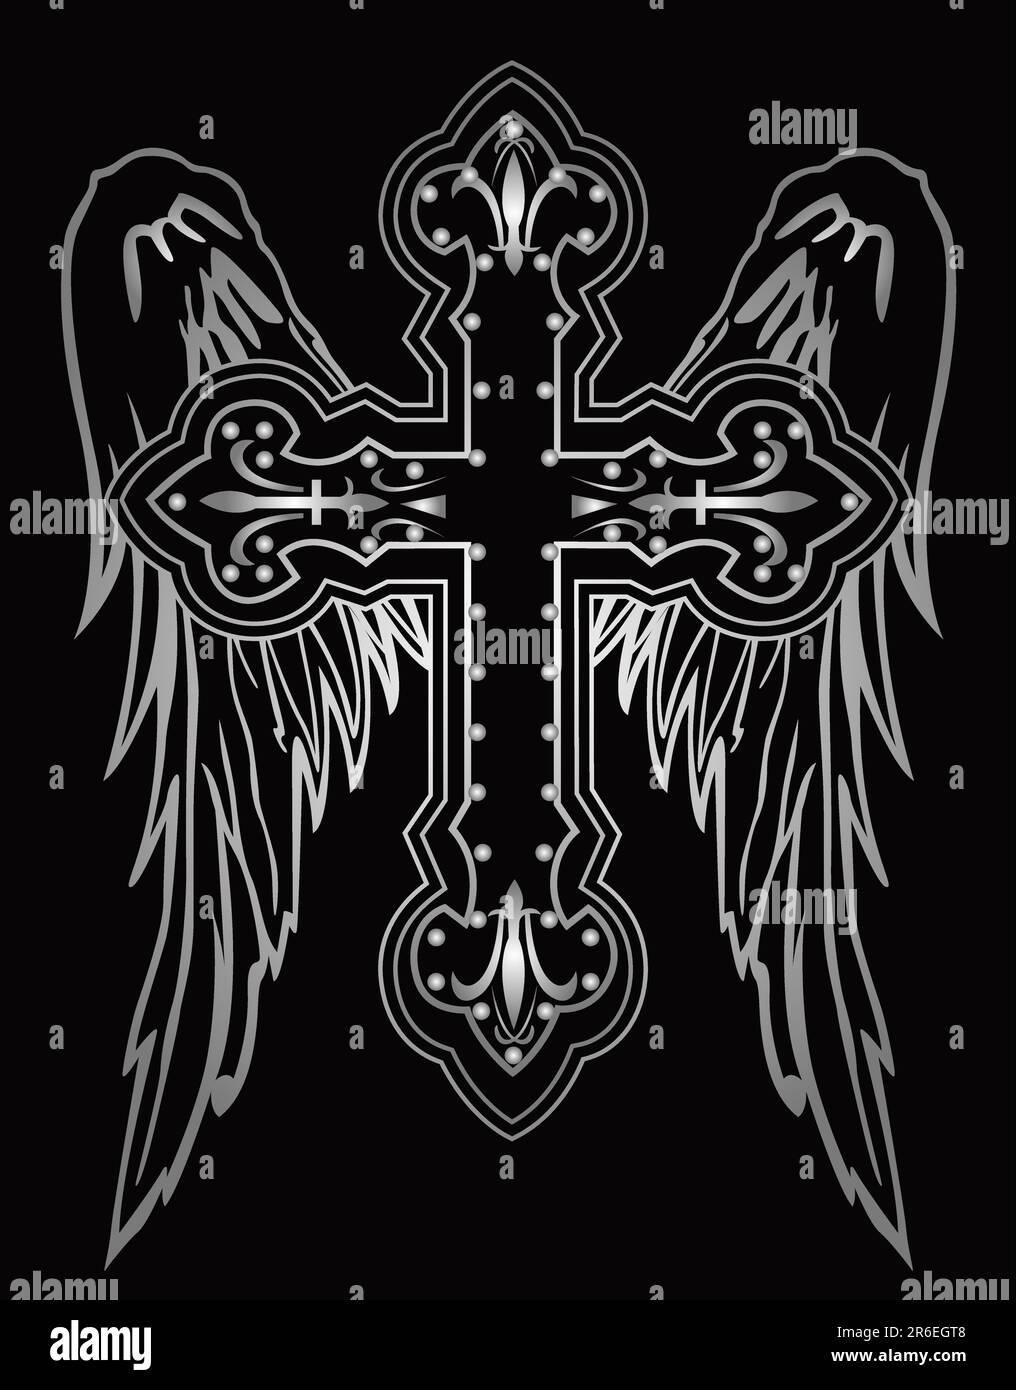 Glänzendes religiöses Kreuz mit Flügelzeichnung Stock Vektor